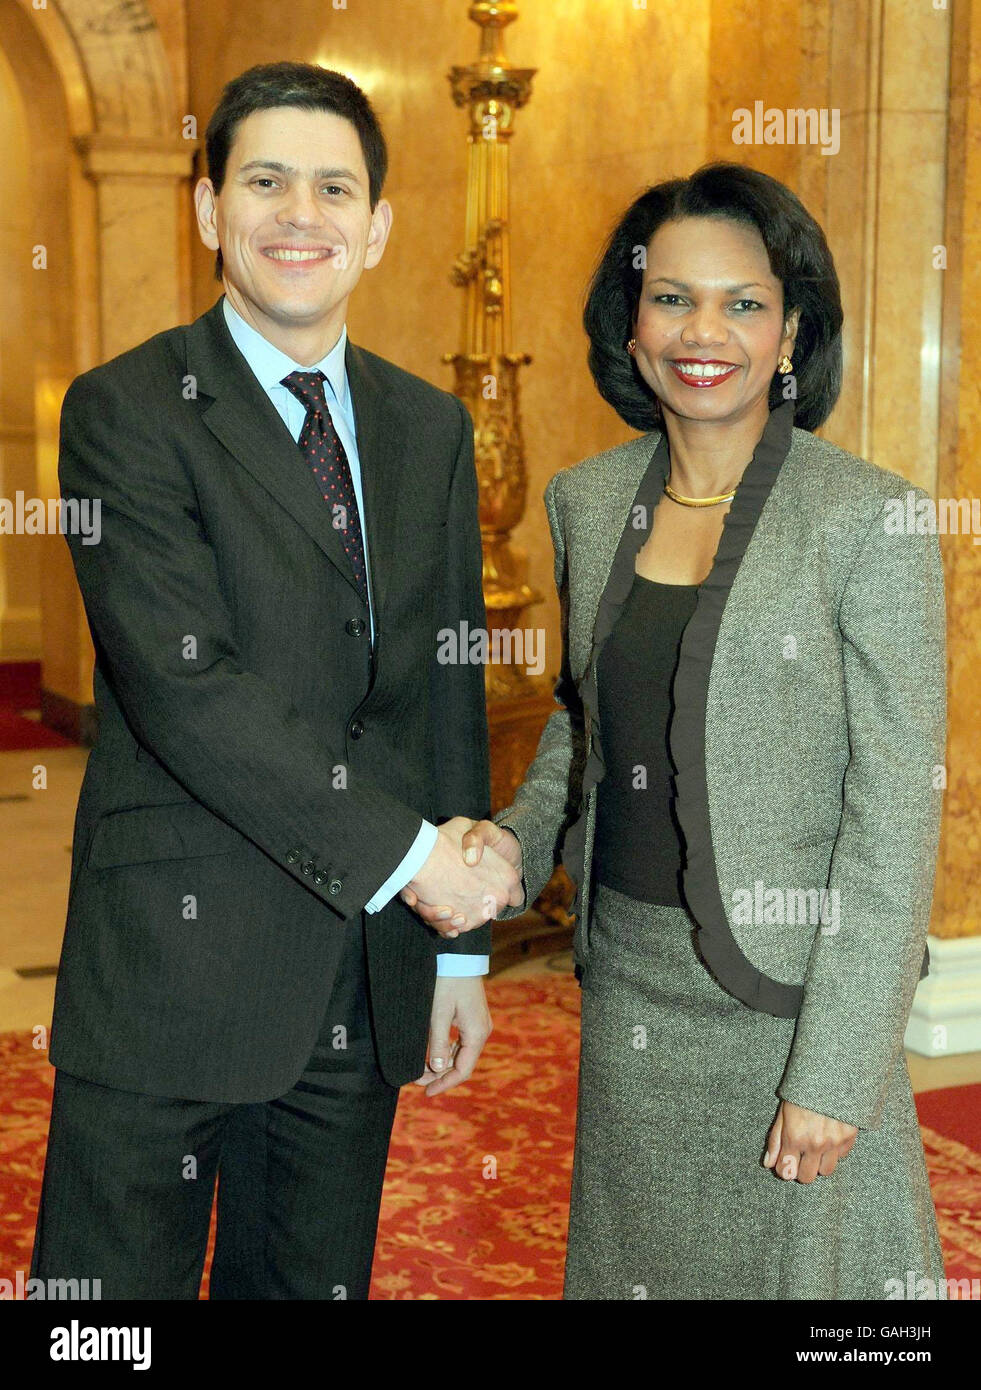 Der britische Außenminister David Miliband schüttelt sich die Hände mit der US-Außenministerin Condoleezza Rice, nachdem sie im Lancaster House in London angekommen ist. Stockfoto